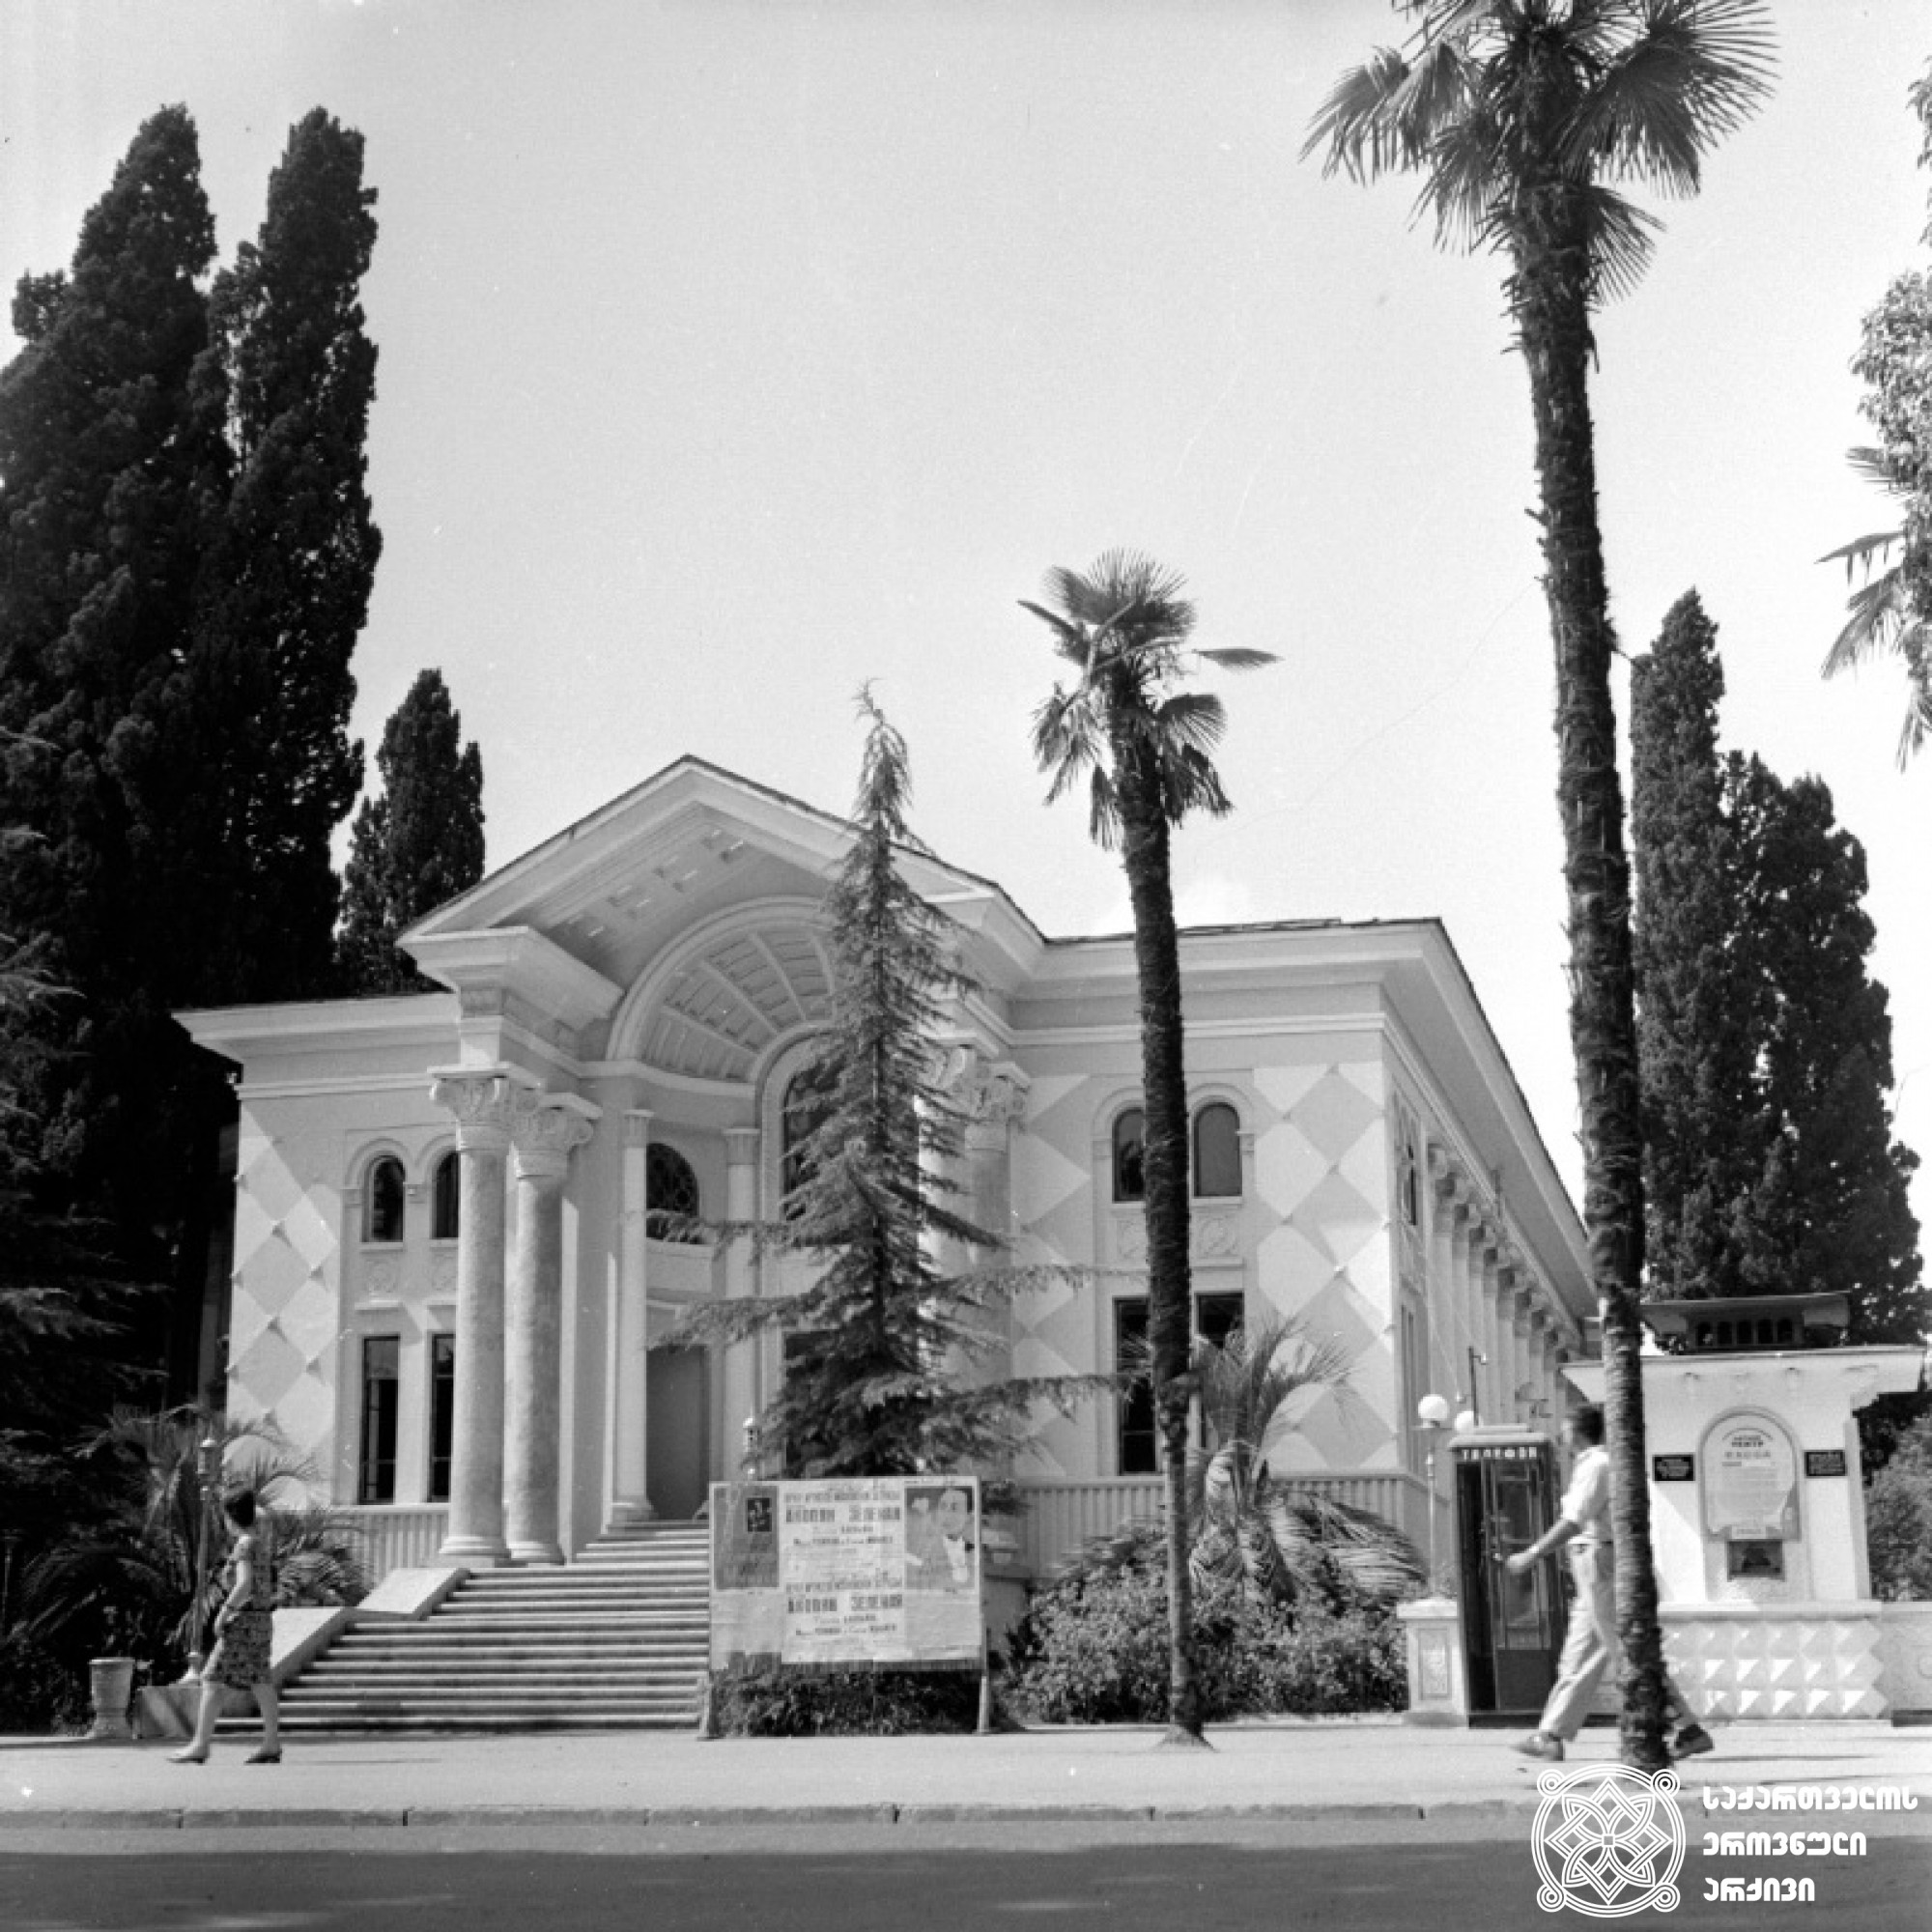 სოხუმის ფილარმონია  <br>
1963 წელი  <br>
ფოტოს ავტორი ივანე დვალი  <br>
Sokhumi Concert Hall  <br>
1963  <br>
Photo by Ivane Dvali